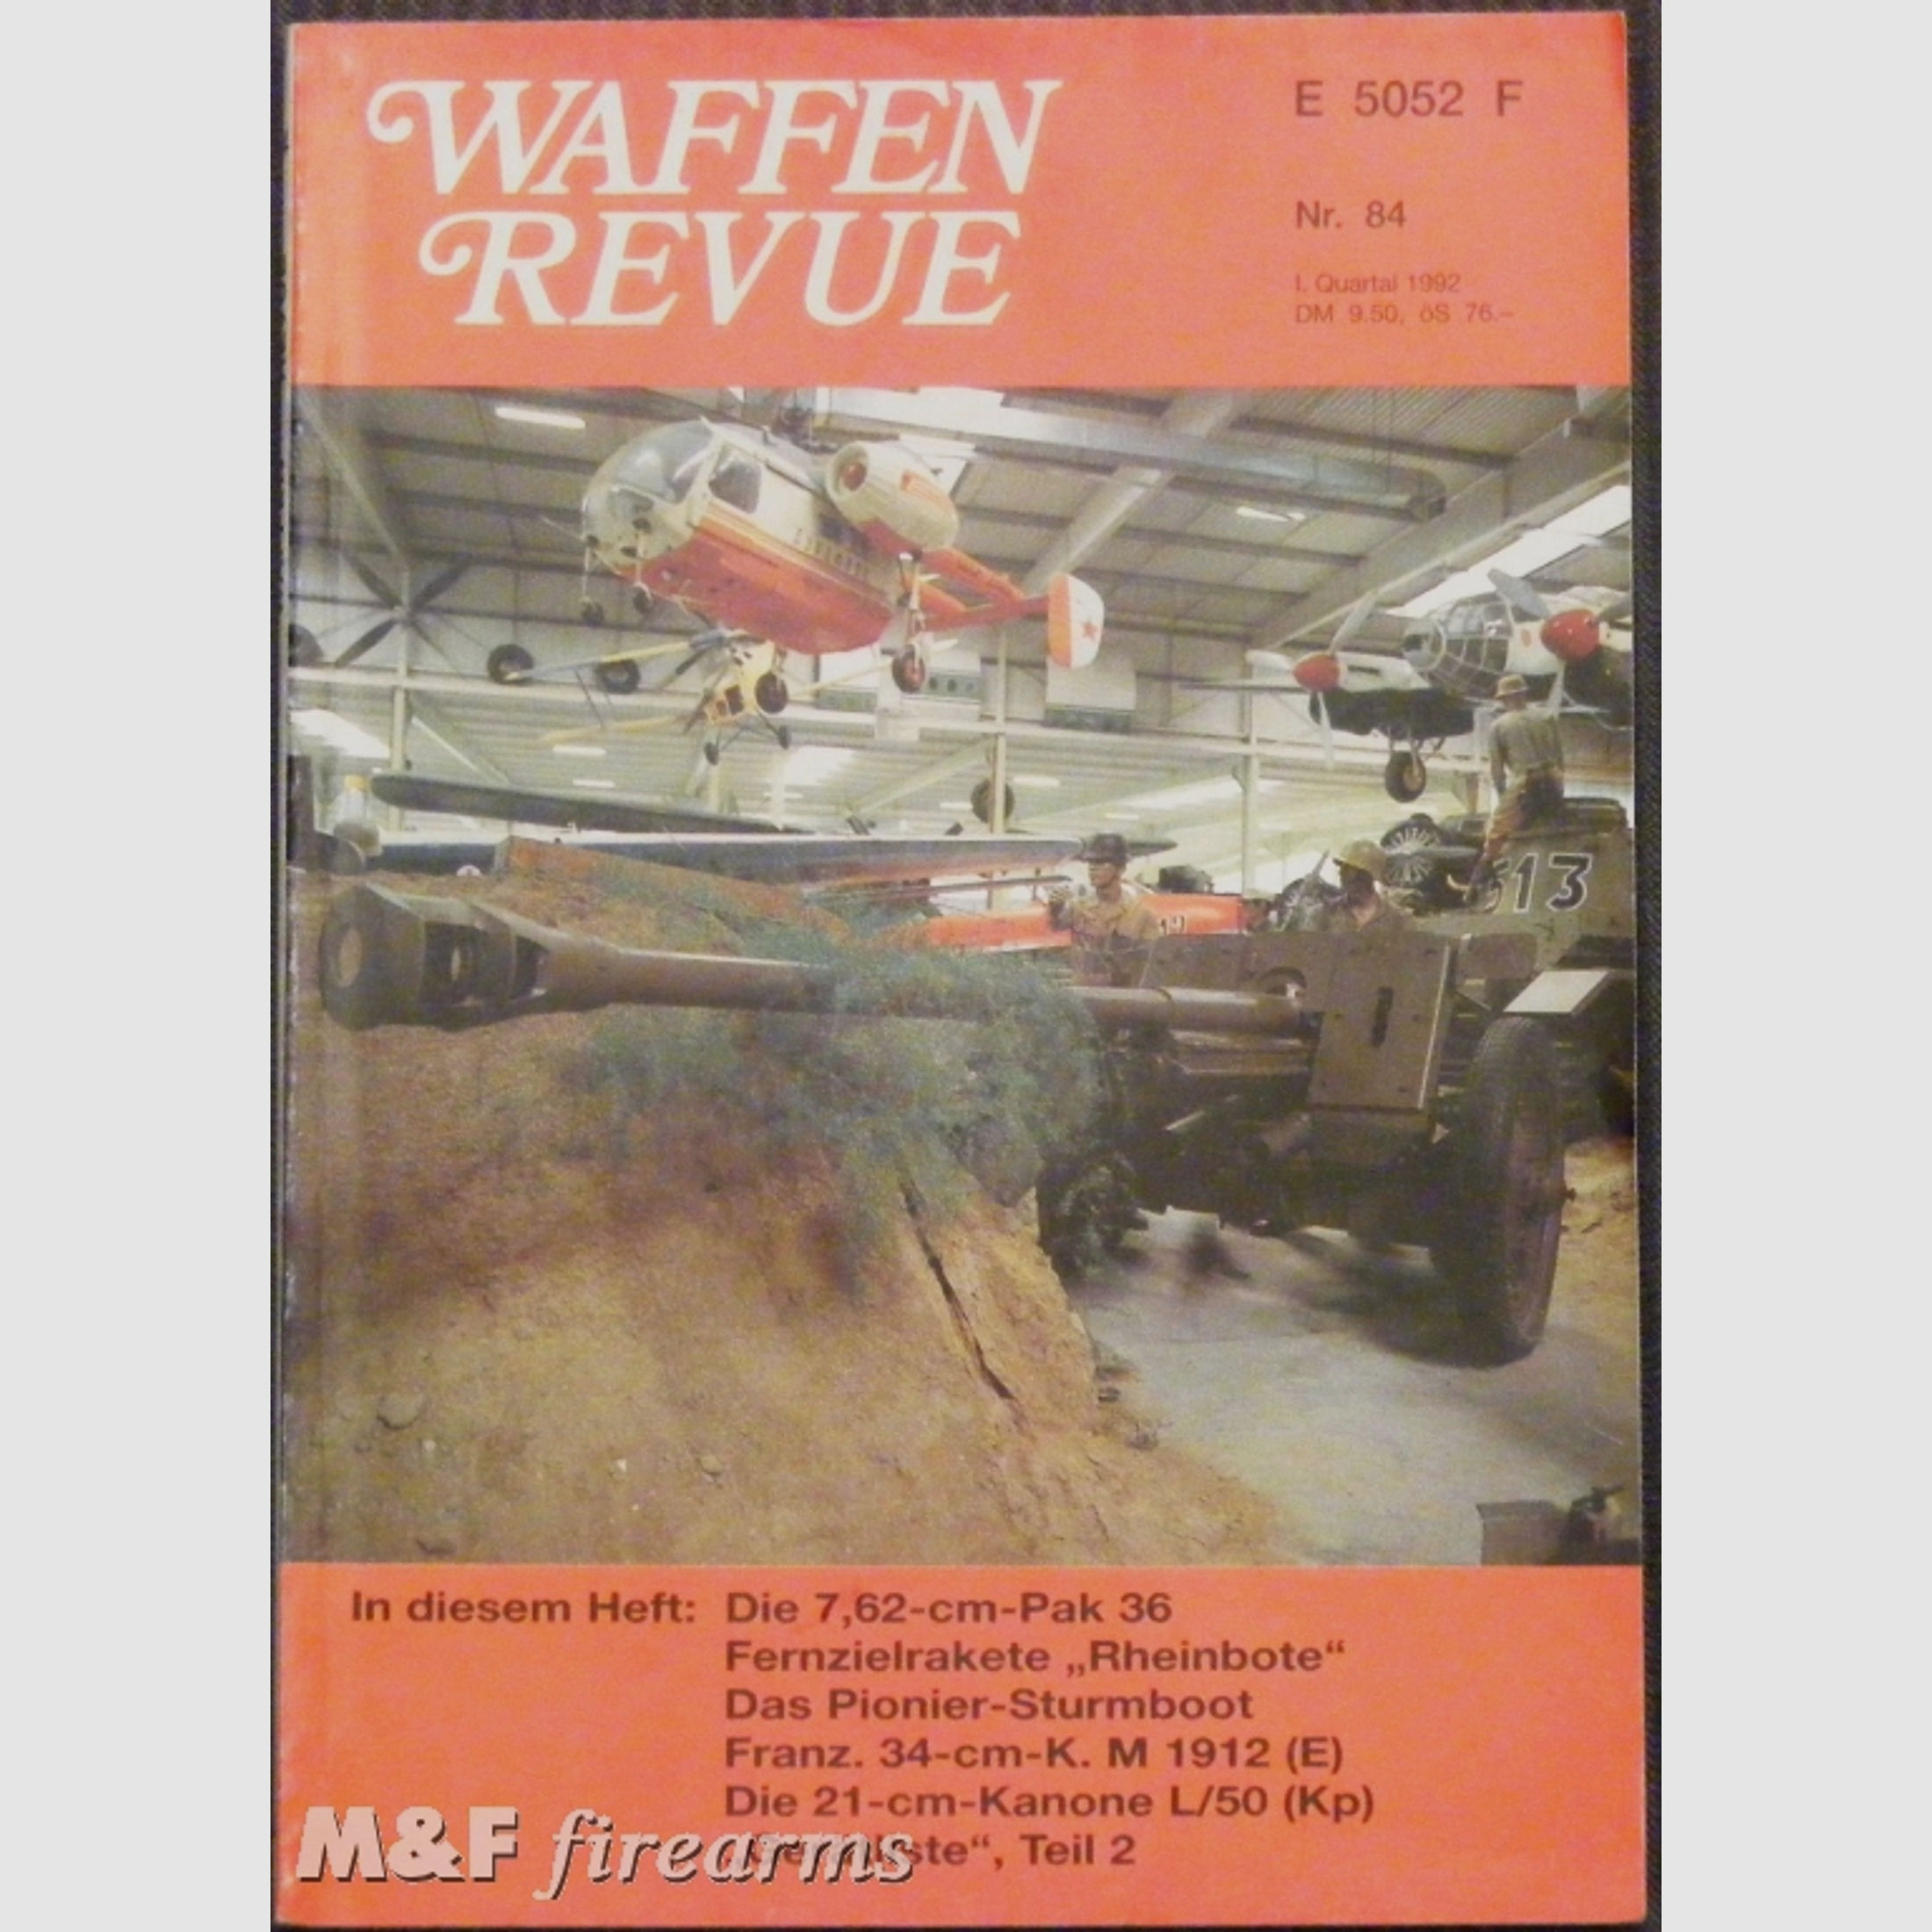 Waffen Revue Nr. 84, 1. Quatal 1992